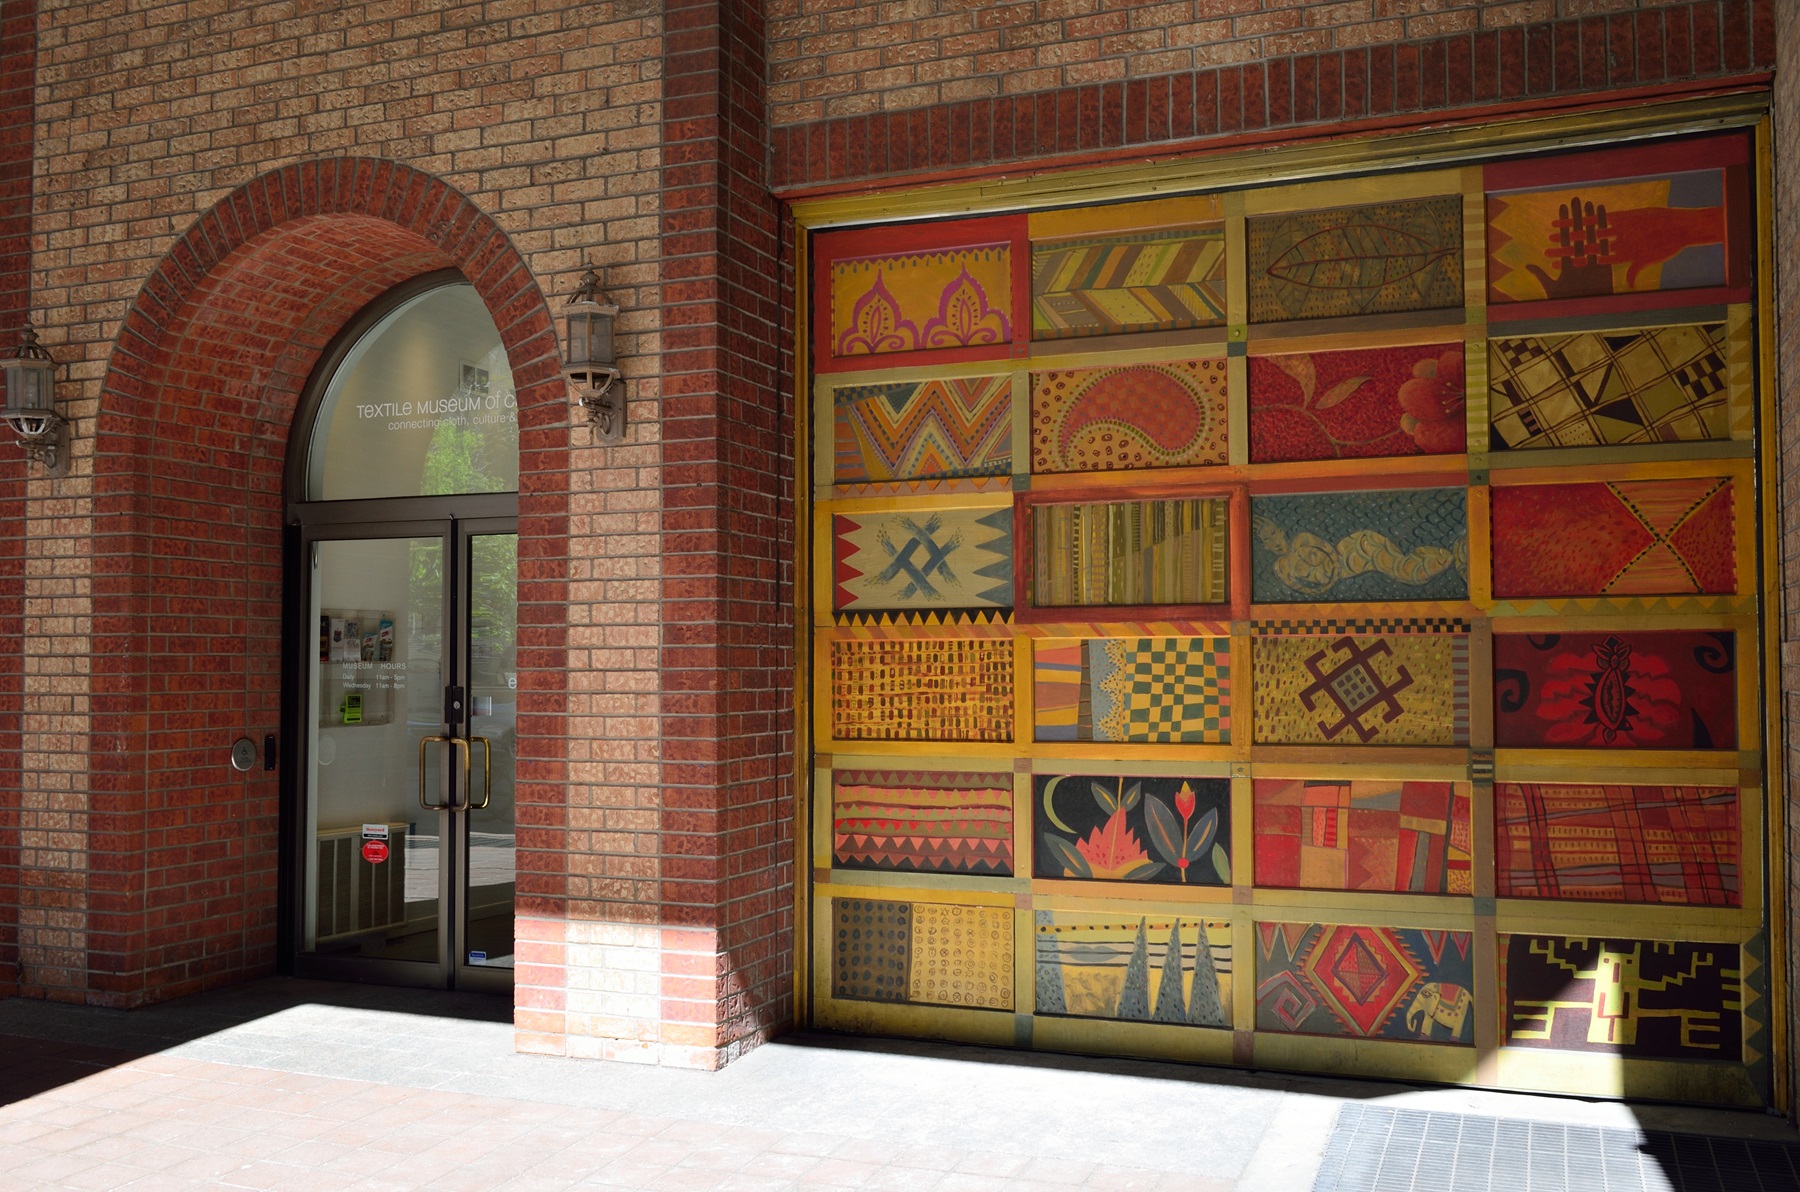 Textile Museum of Canada, Toronto